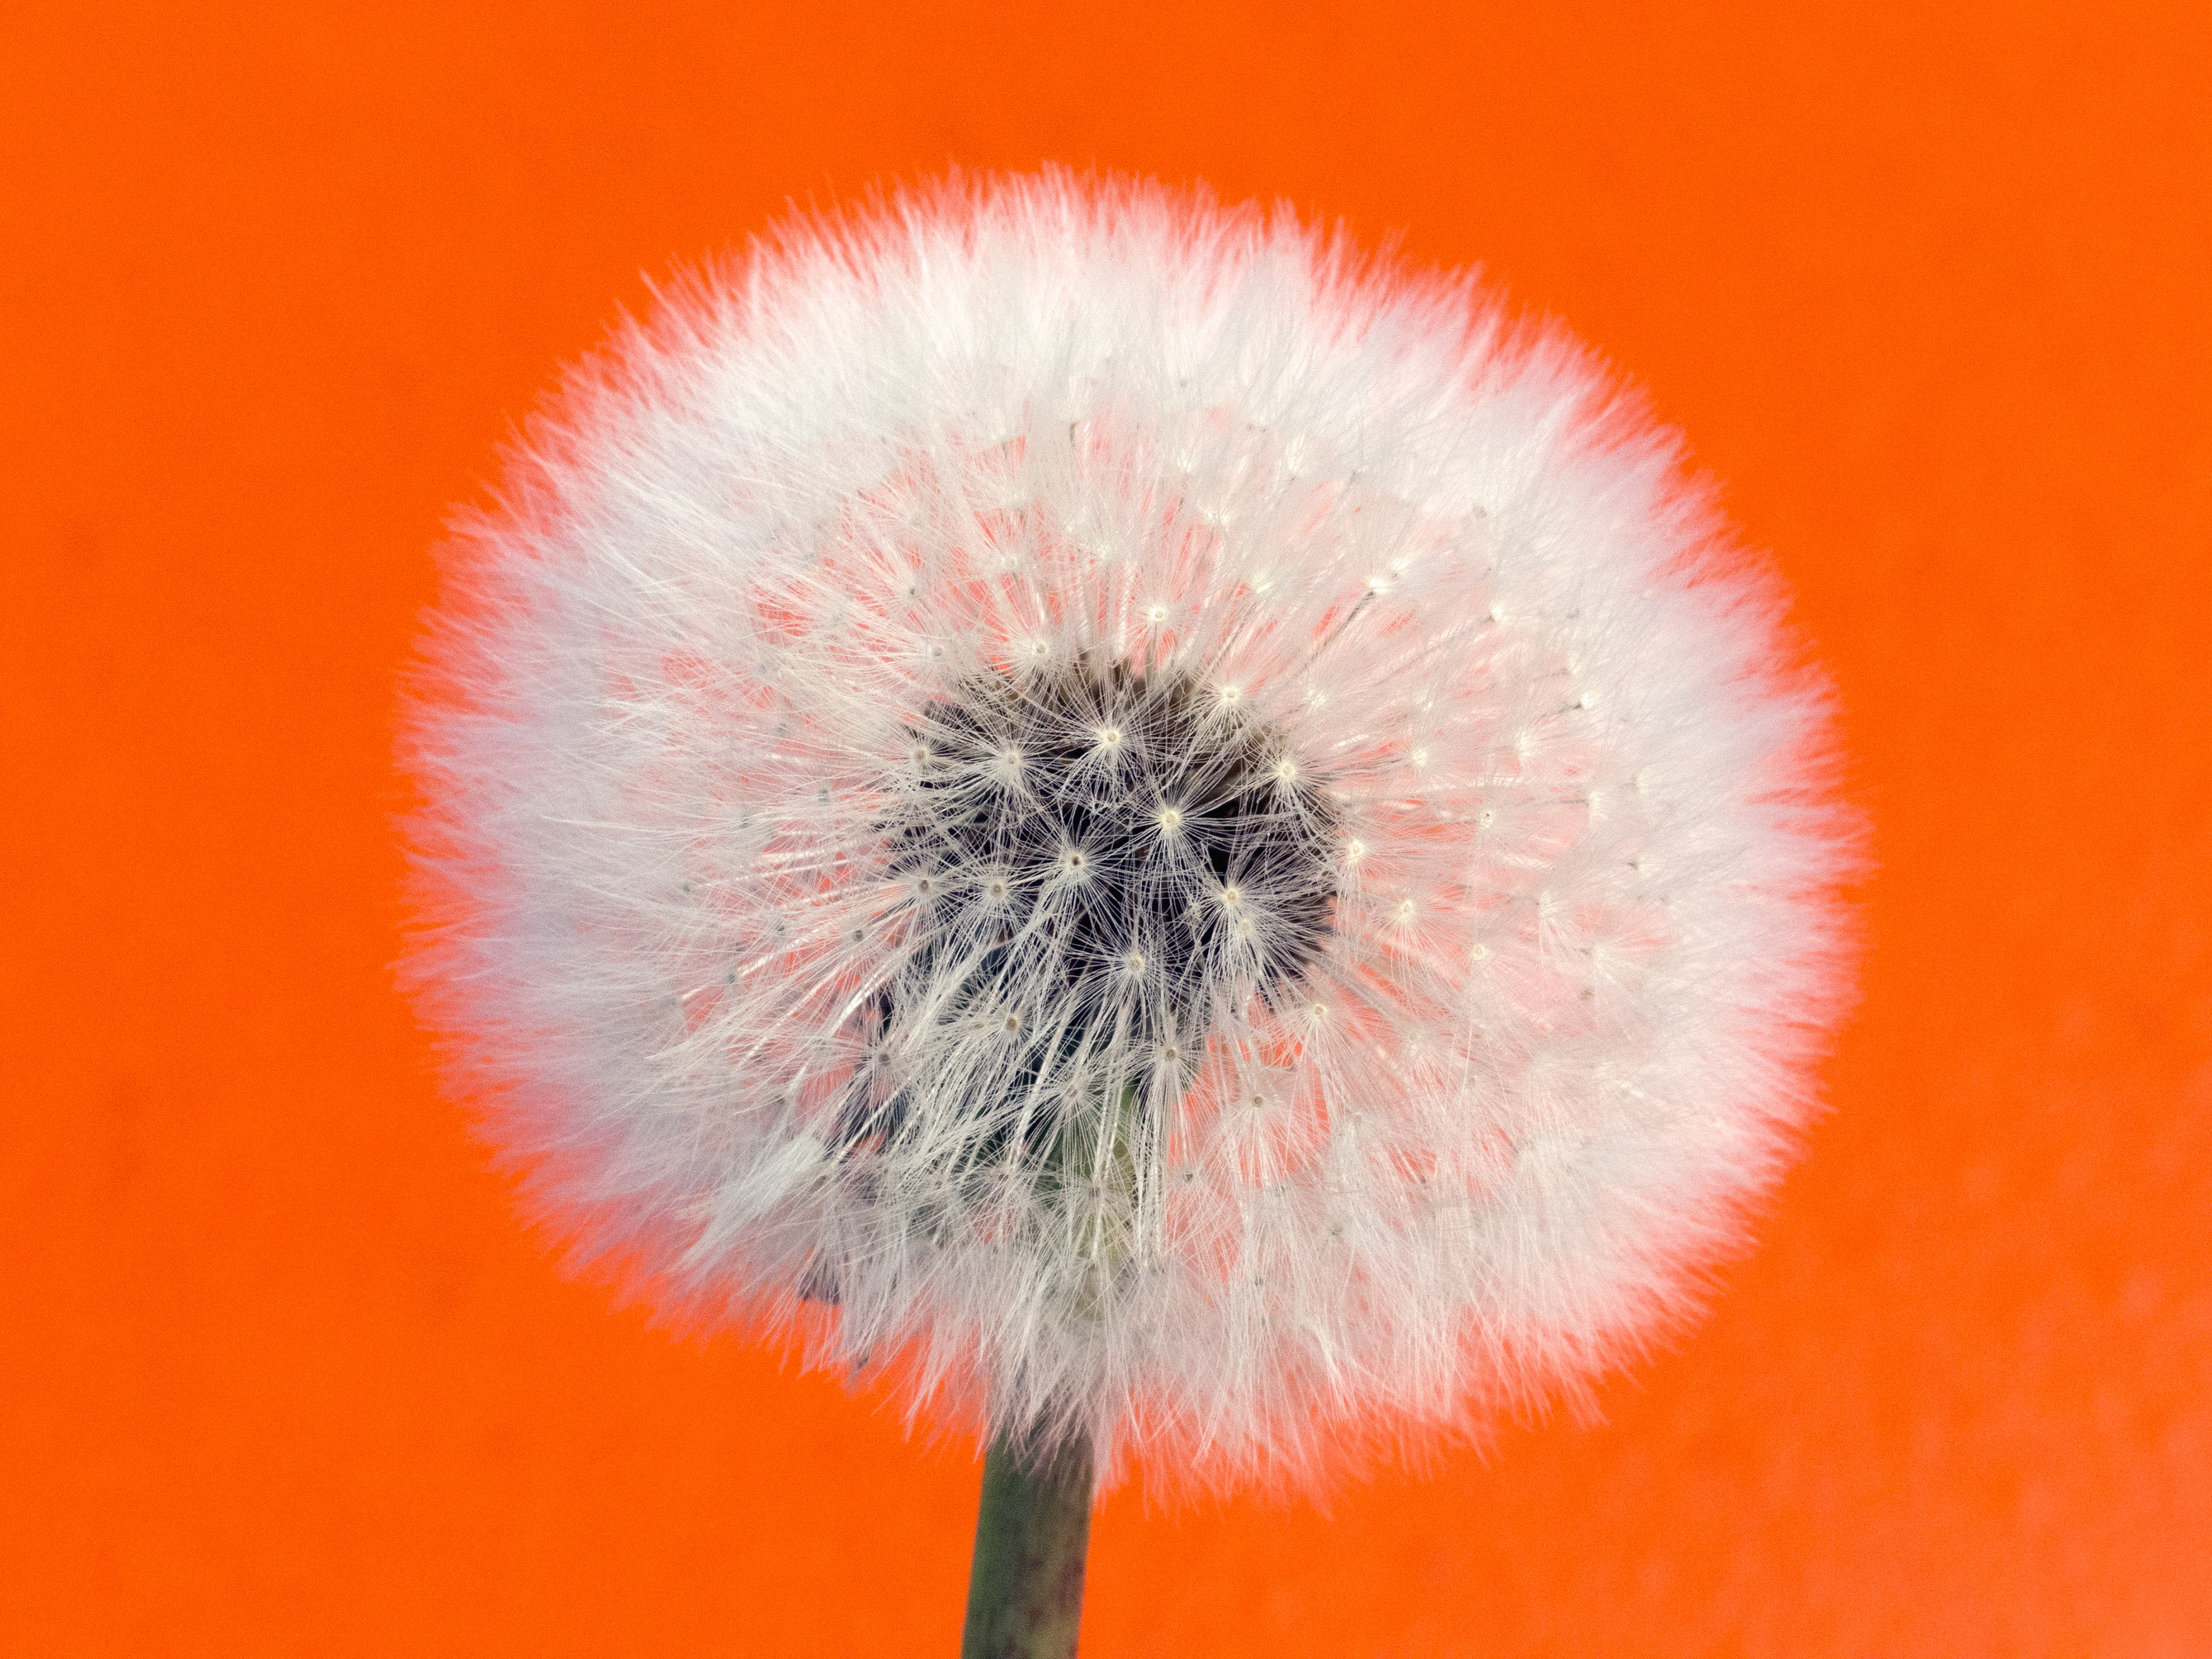 Free Image: Withered dandelion - Orange Background | Libreshot ...